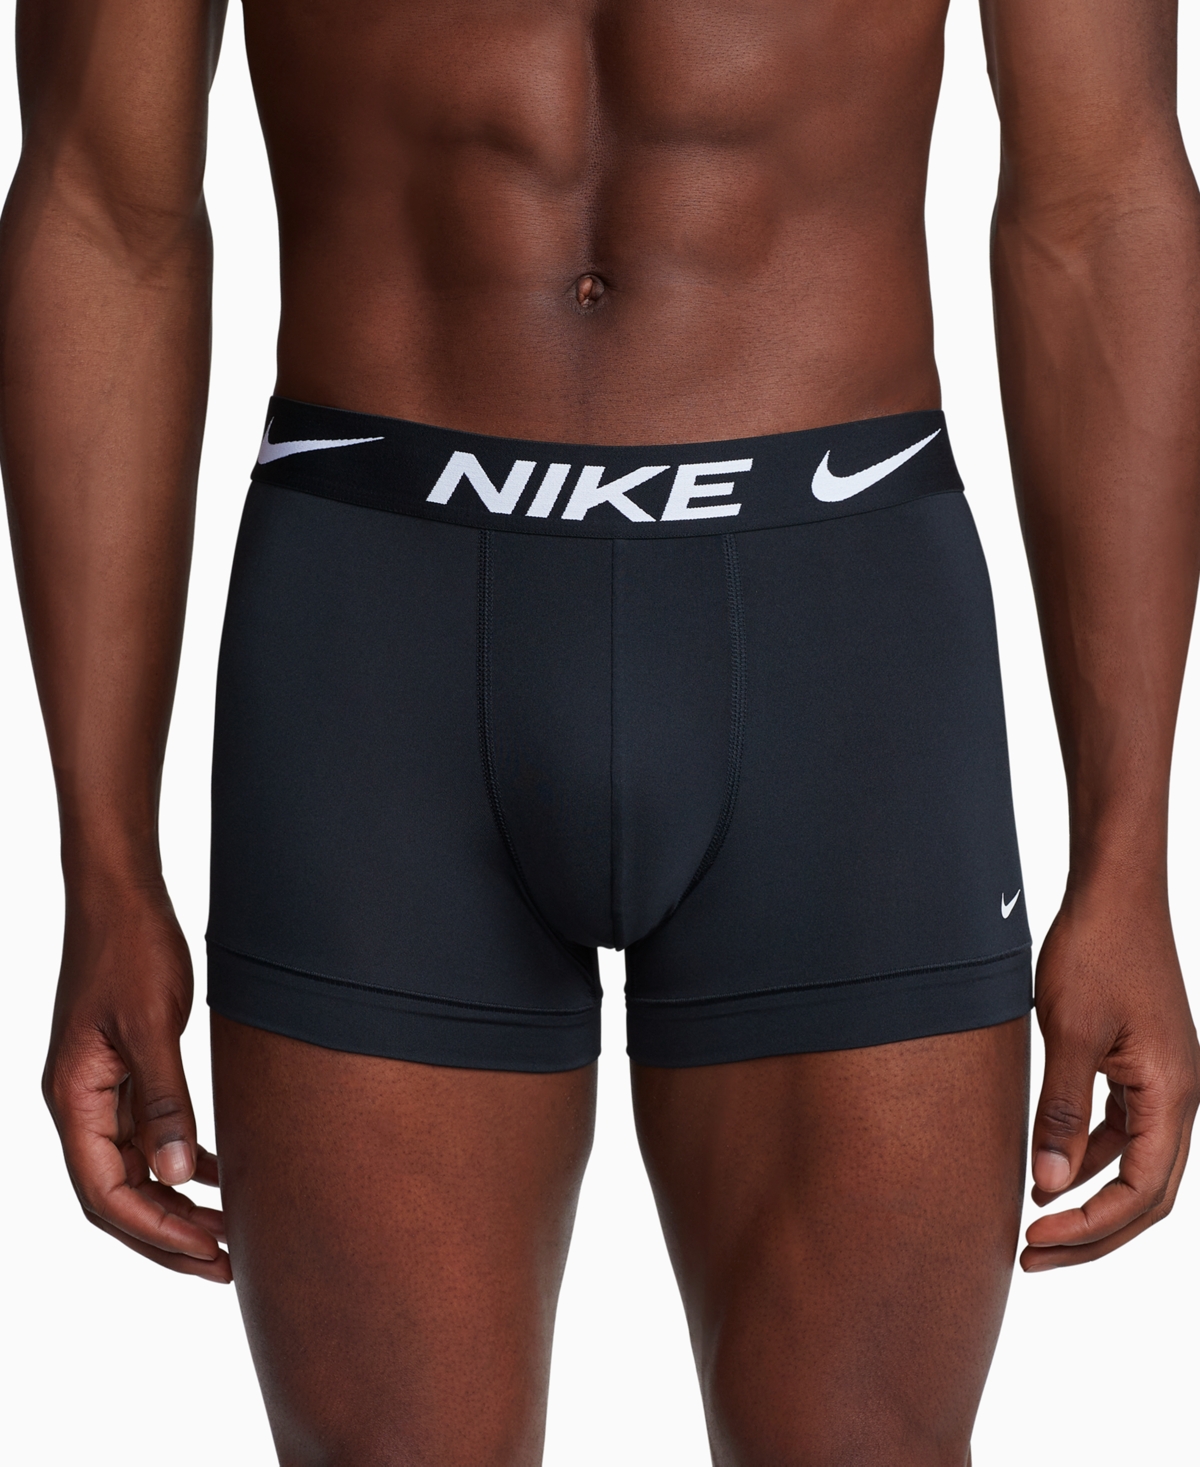 Nike Men's 3-pk. Dri-fit Essential Micro Trunk In Black